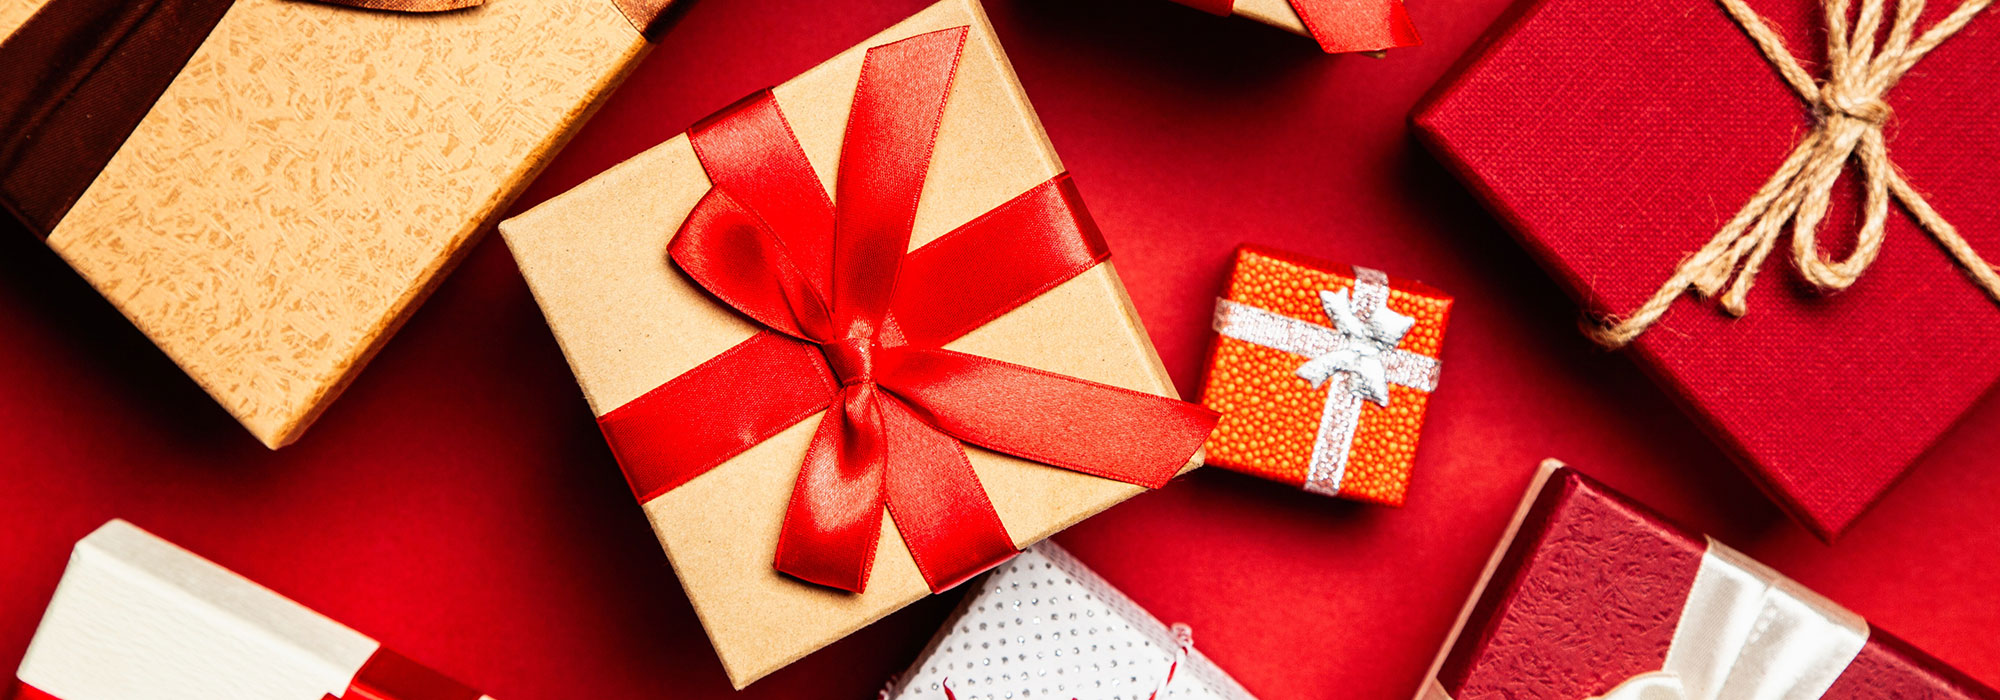 5 redenen om kerst te vieren met gepersonaliseerde artikelen